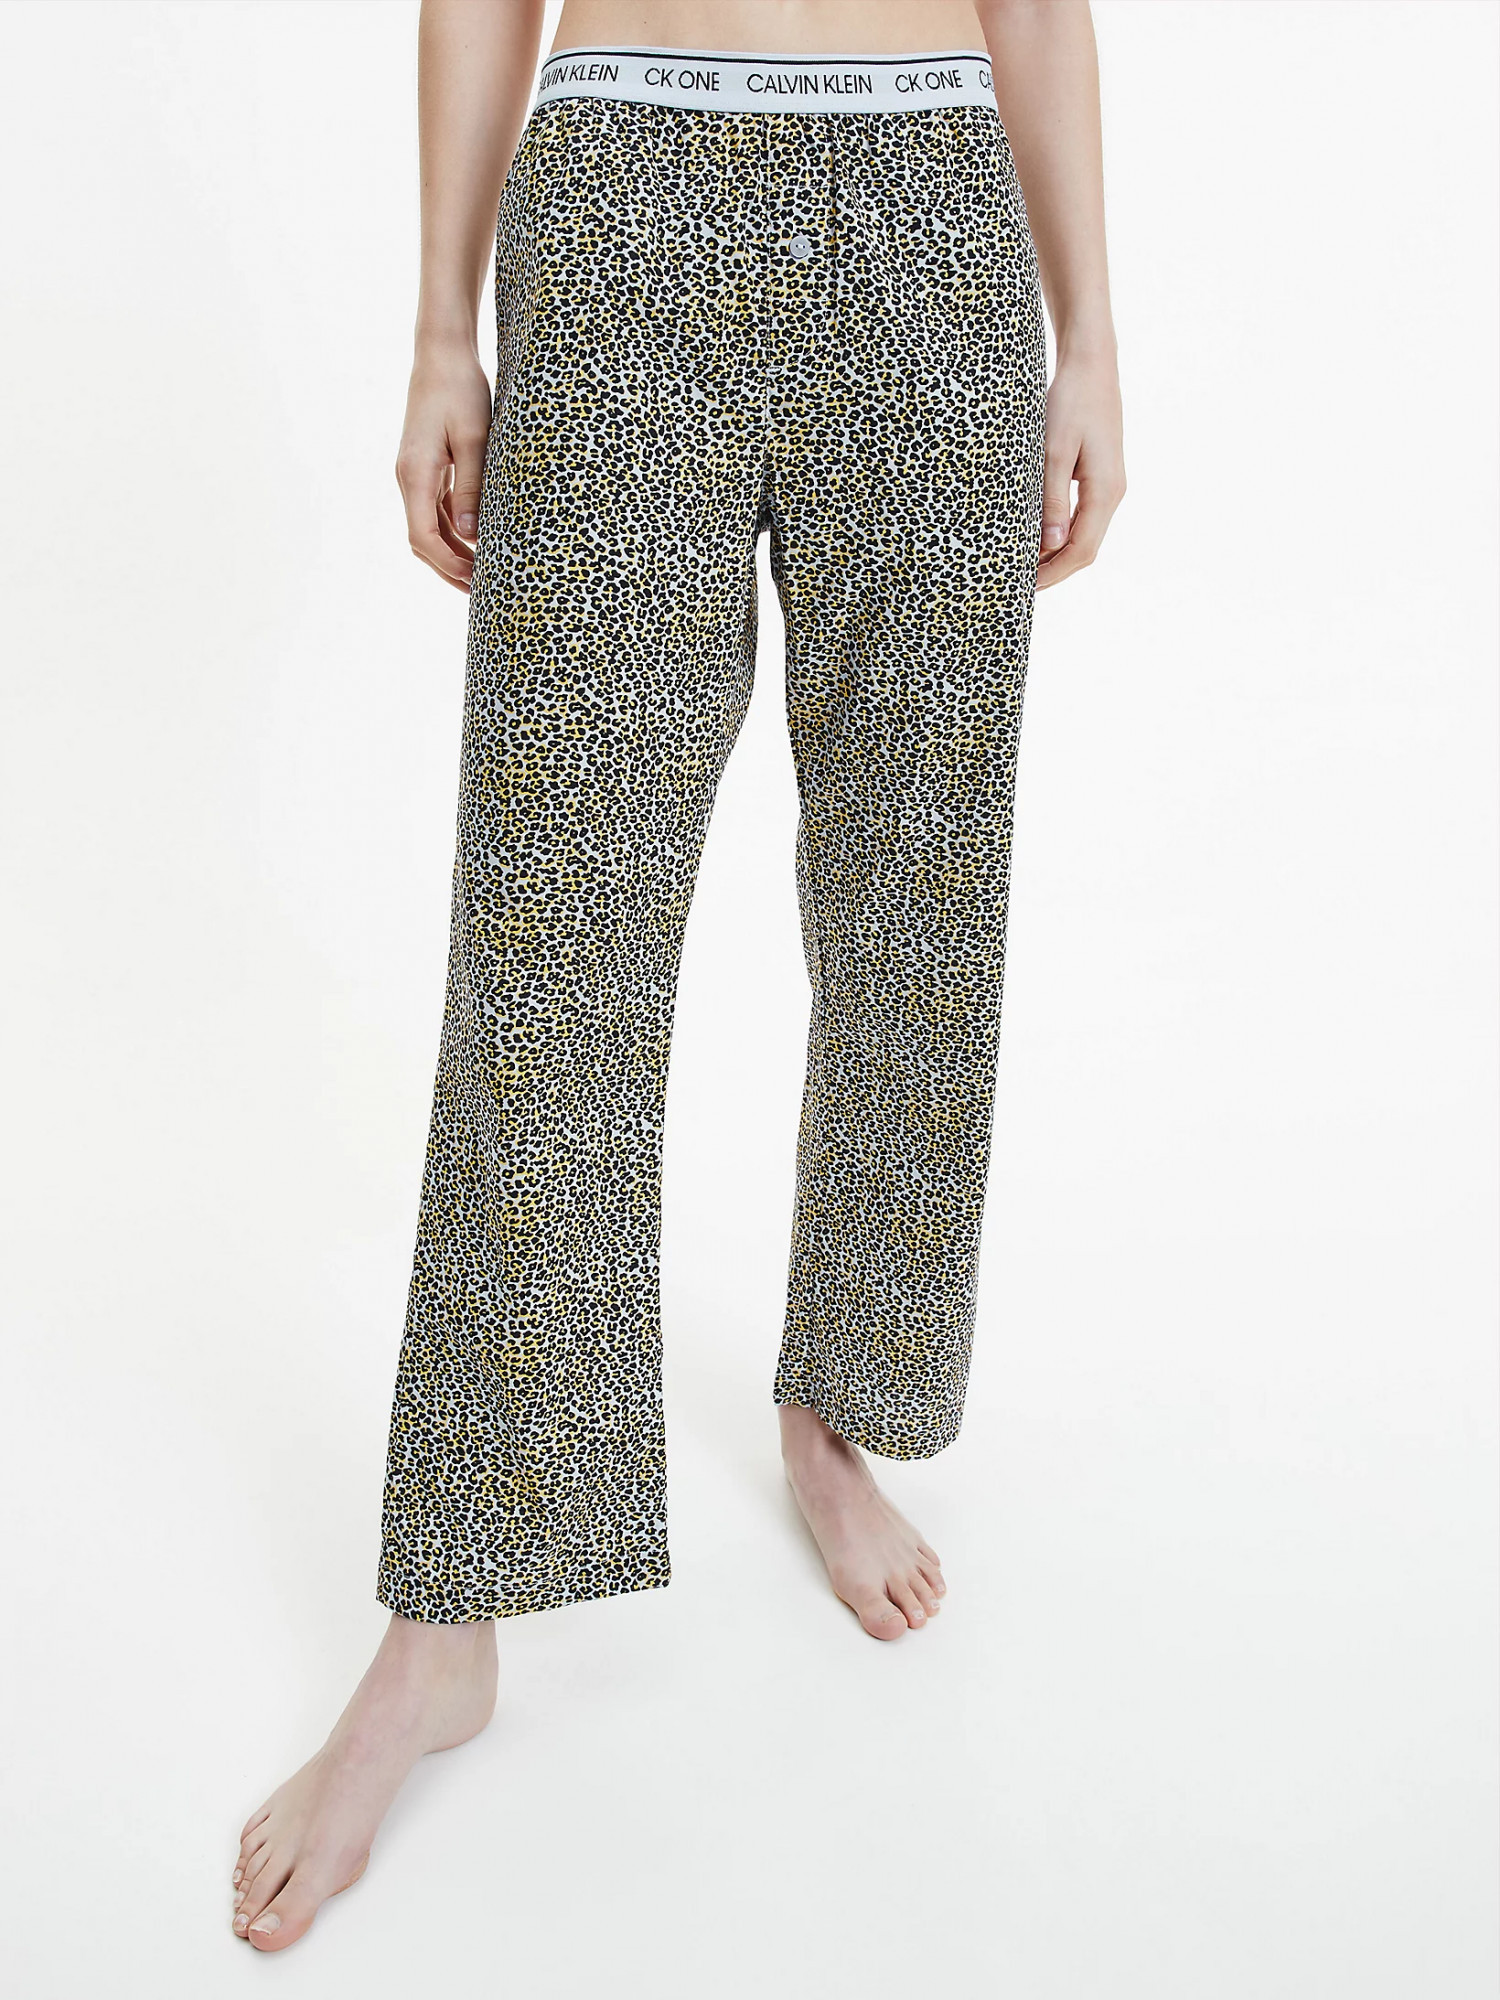 Dámské pyžamové kalhoty QS6433E - V4L Fialová se zvířecím vzorem - Calvin Klein M fialový vzor